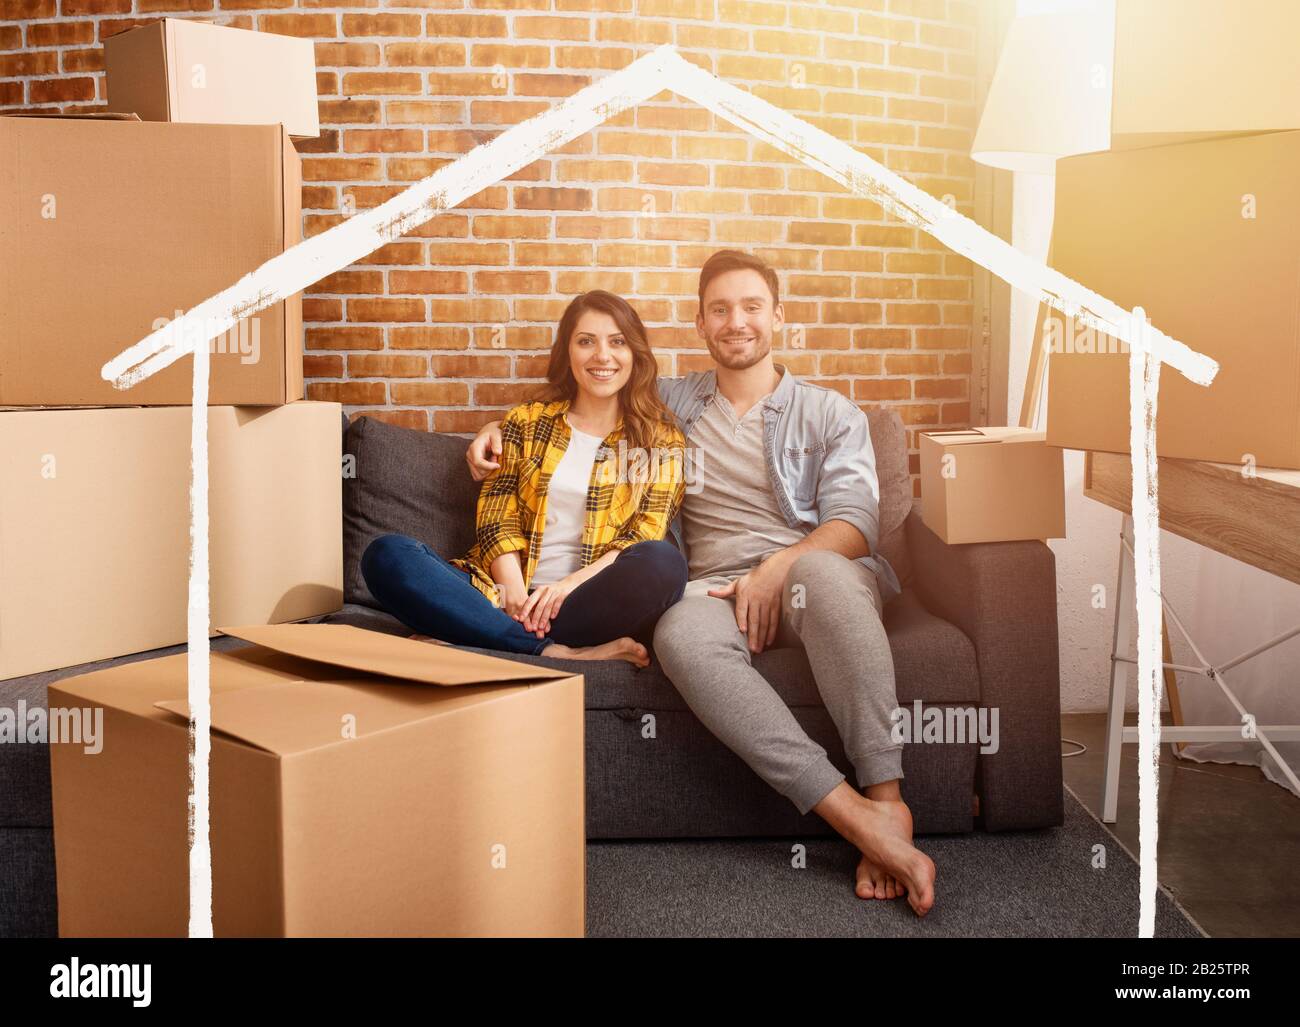 Heureux couple ont trouvé une nouvelle maison et ils ont besoin d'organiser tous les paquets. Concept de succès, de changement, de positivité et d'avenir Banque D'Images